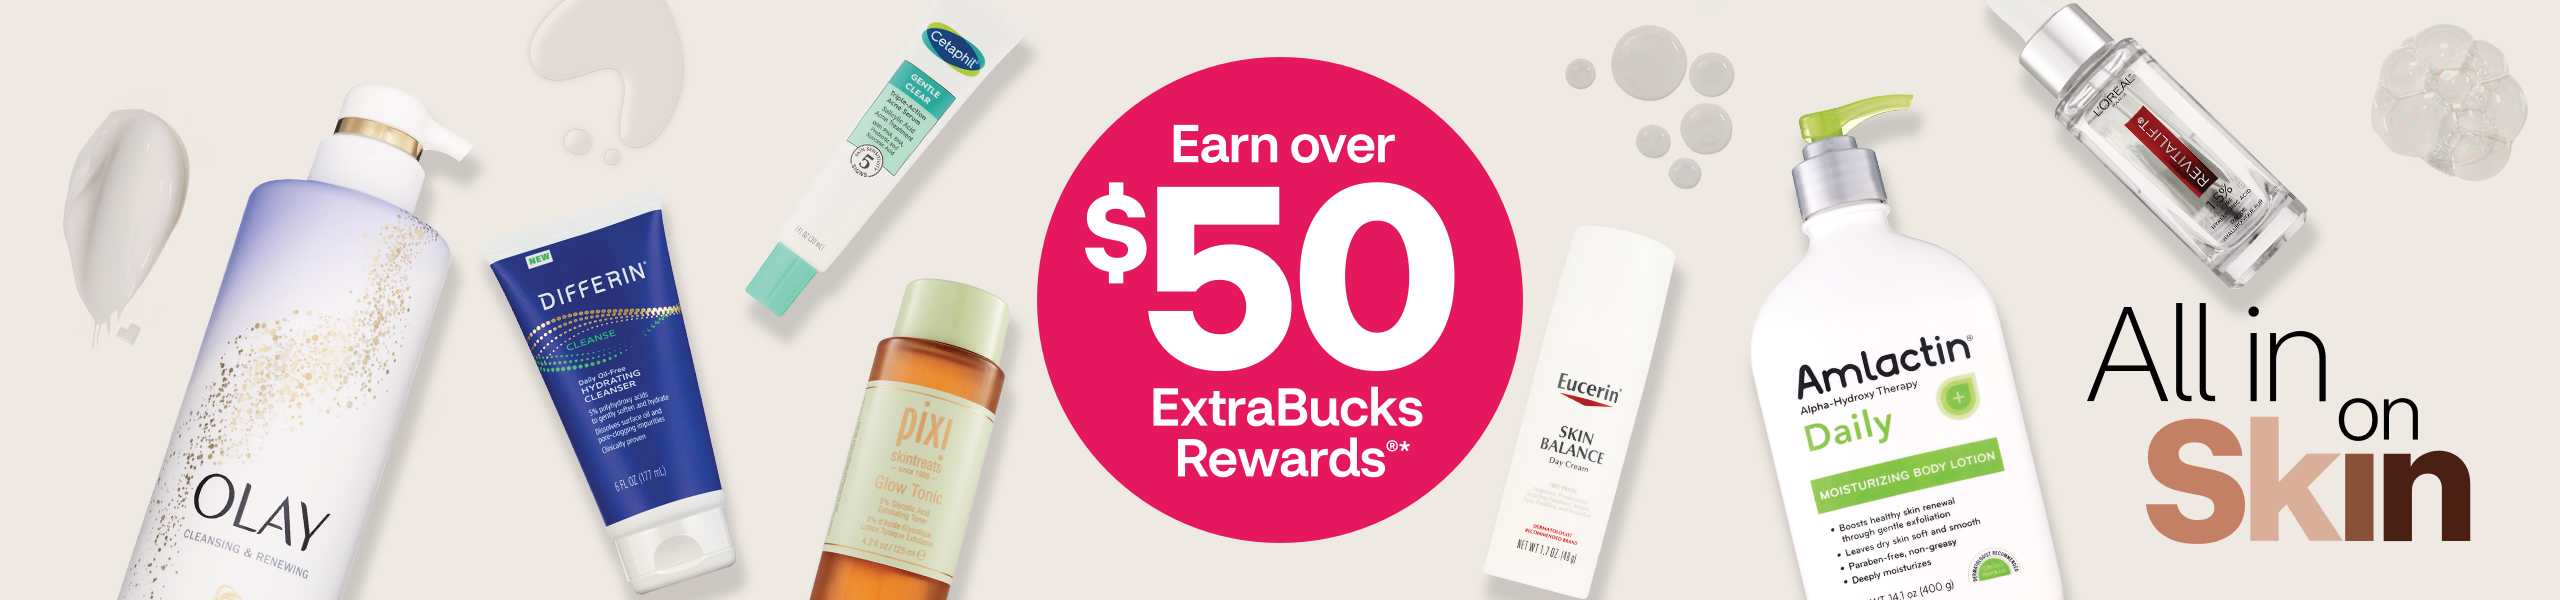 Gane más de $50 en recompensas ExtraBucks Rewards. Productos para el cuidado de la piel Olay, Differin, Pixi, Cetaphil, Eucerin, Amlactin y L'Oréal.